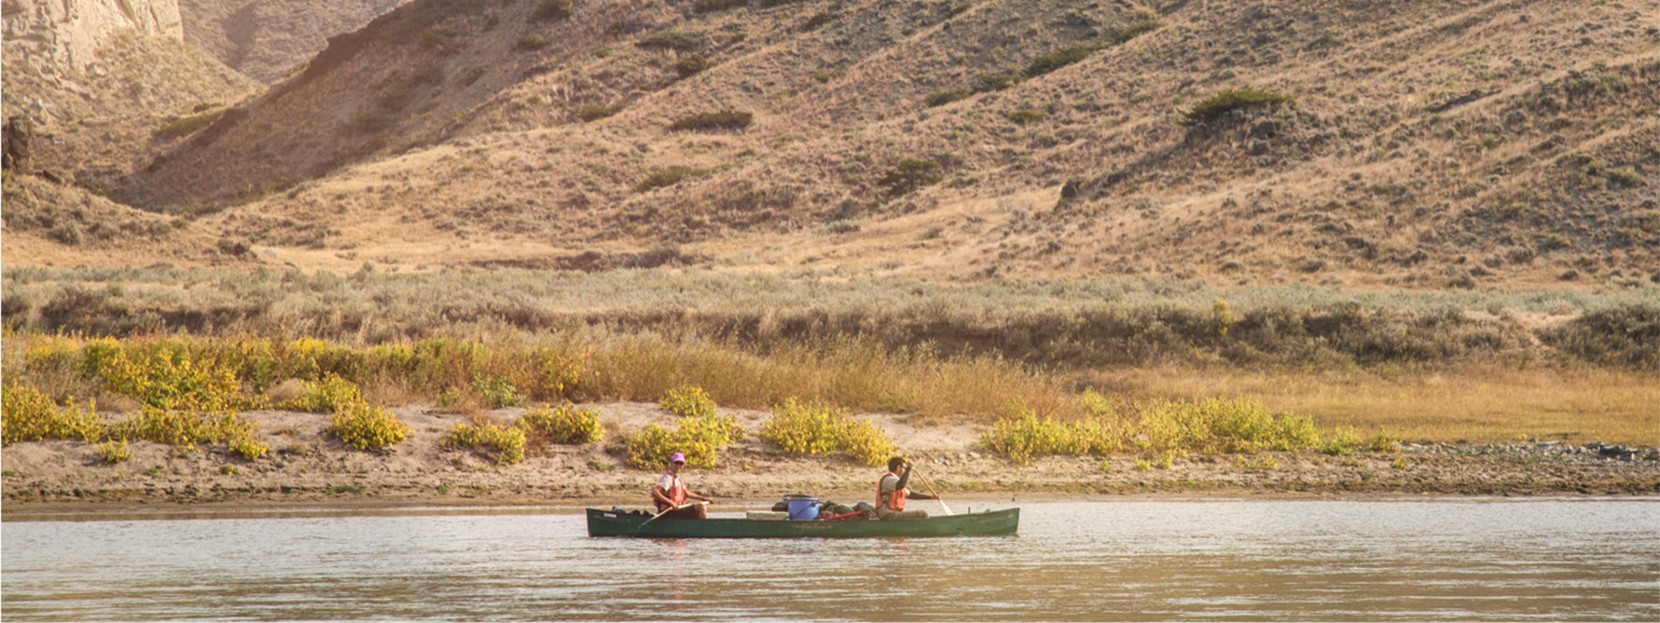 2 men in a canoe on the Upper Missouri River.